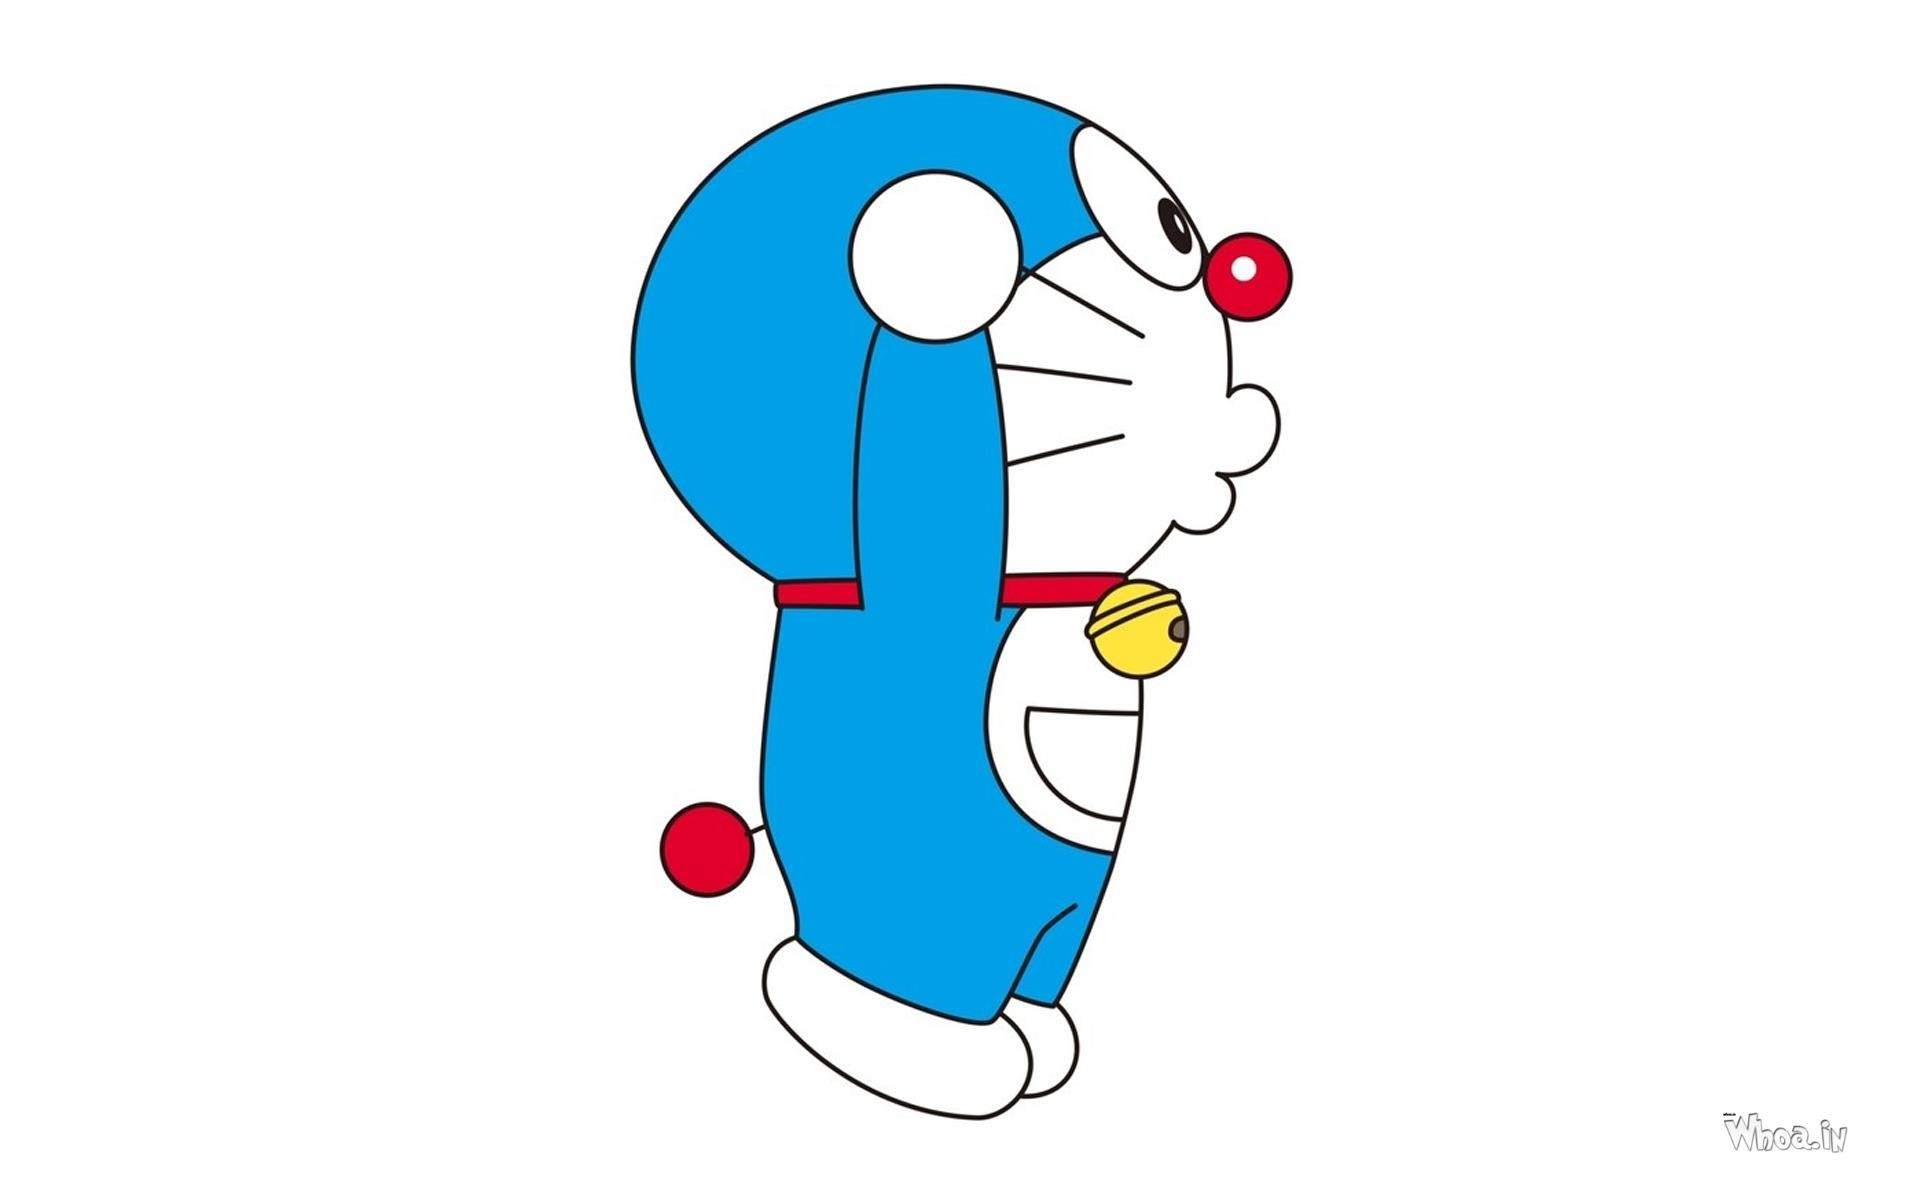 Hình nền Doraemon 2018 sẽ khiến cho màn hình điện thoại của bạn trở nên sinh động và đầy màu sắc hơn bao giờ hết. Với bộ sưu tập 78+ hình nền Doraemon và bạn bè trên nền tảng Wallpaper 2018, bạn sẽ được tận hưởng những hình ảnh đáng yêu và ngộ nghĩnh hết mức có thể. Hãy để Doraemon và các bạn giúp cho ngày của bạn trở nên thật tuyệt vời!